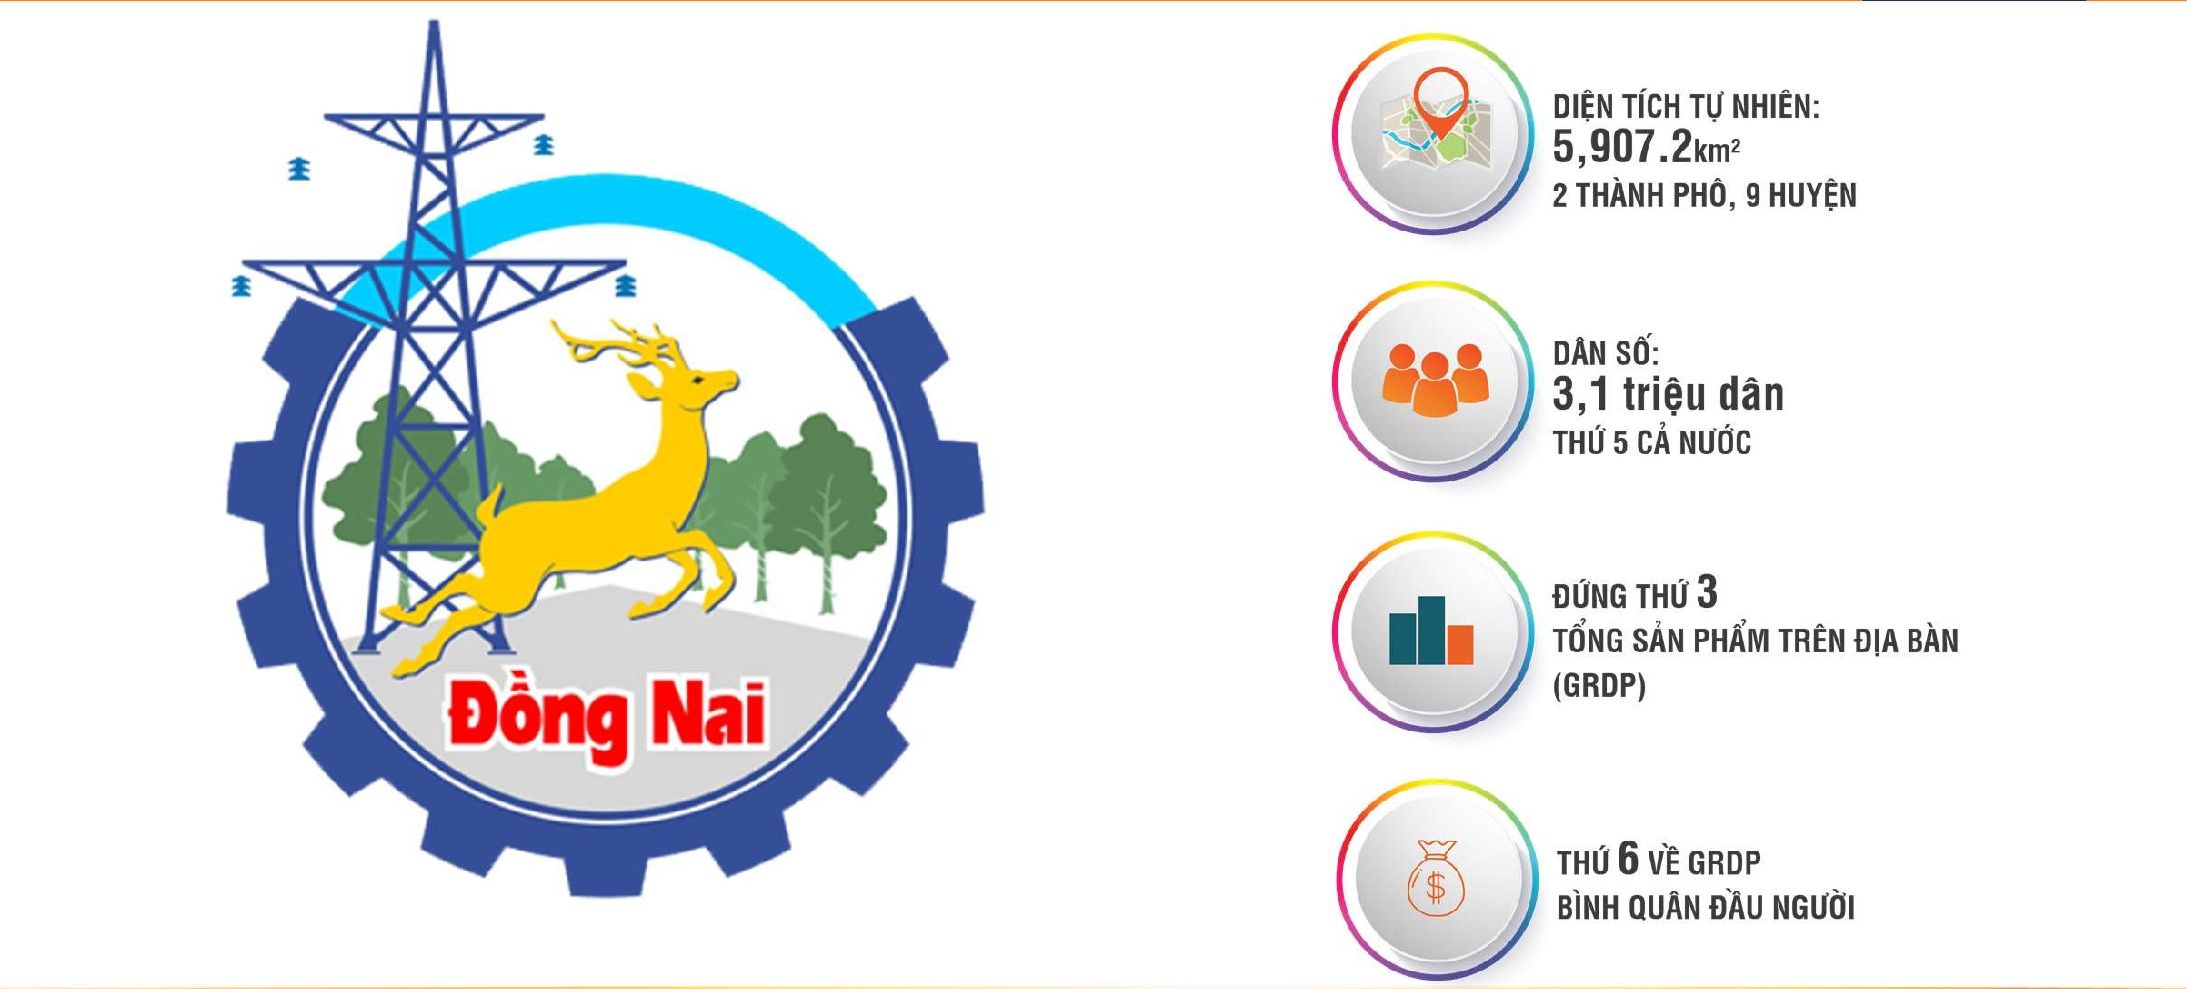 Diện tích và dân số của tỉnh Đồng Nai, đứng thứ 3 về Tổng sản phẩm trên địa bàn (GRDP)